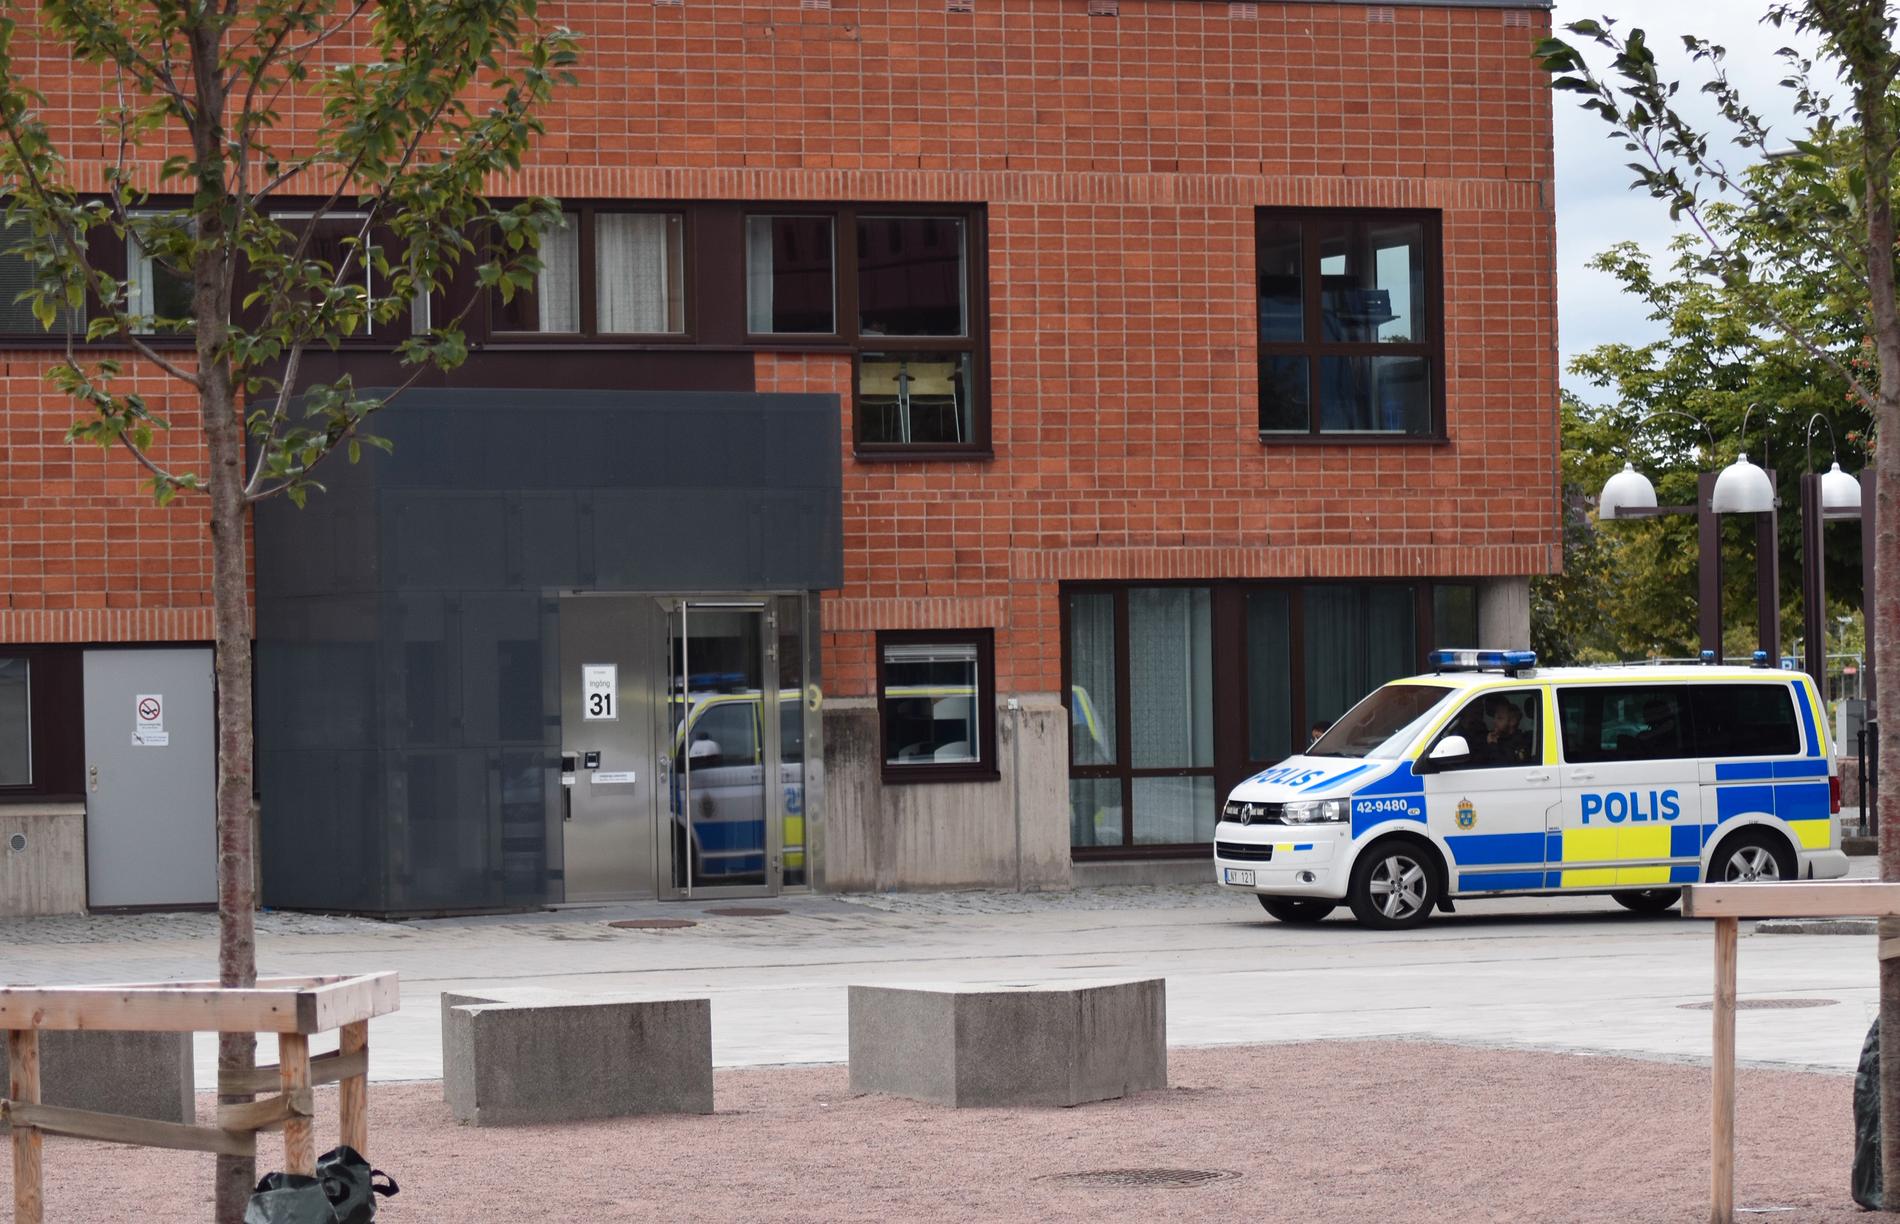 Polis på plats vid Linköpings universitet.